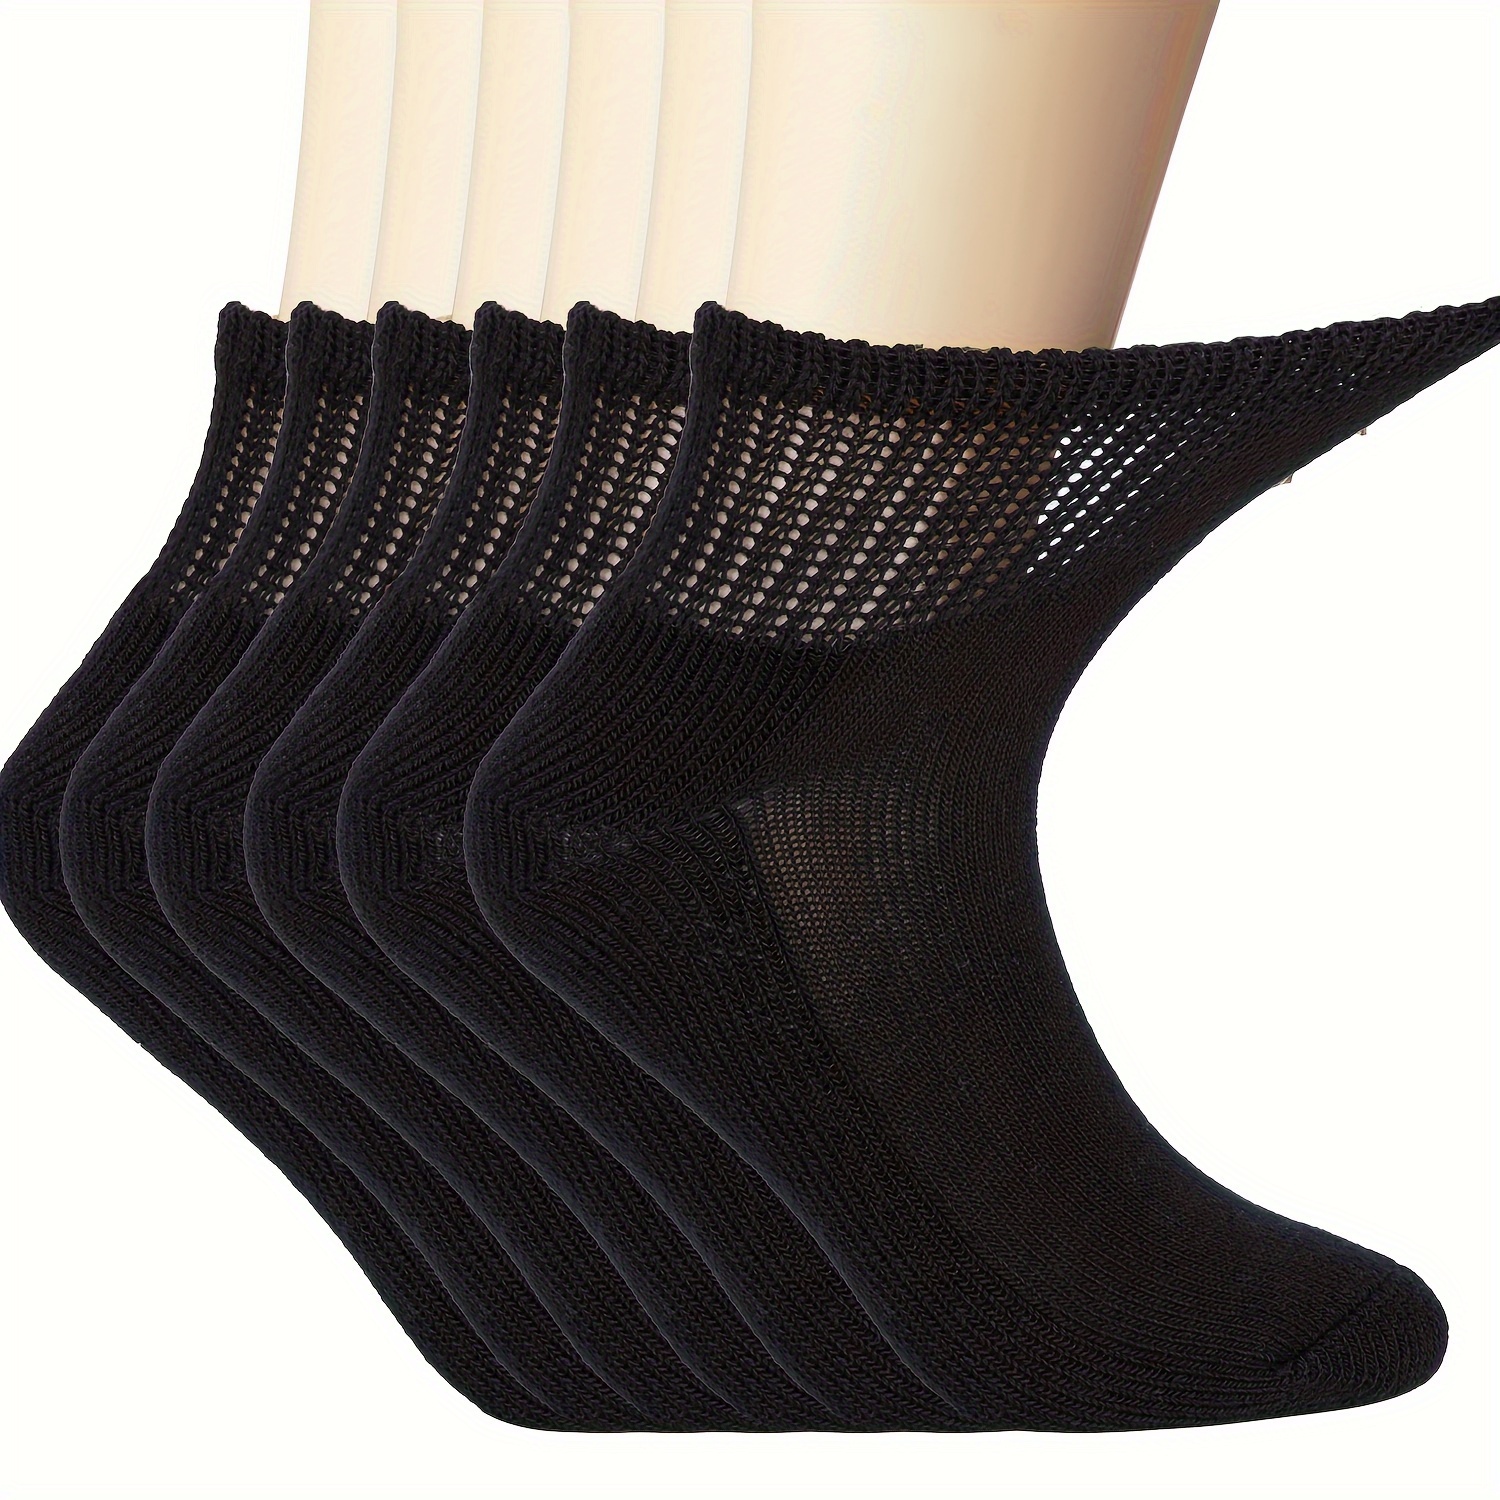 5 Pairs Women's Toe Socks Cotton Crew Sock Five Finger Socks For Running  Athletic Five Toe Socks Running Ankle Toe Socks Women Socks Cotton Sock